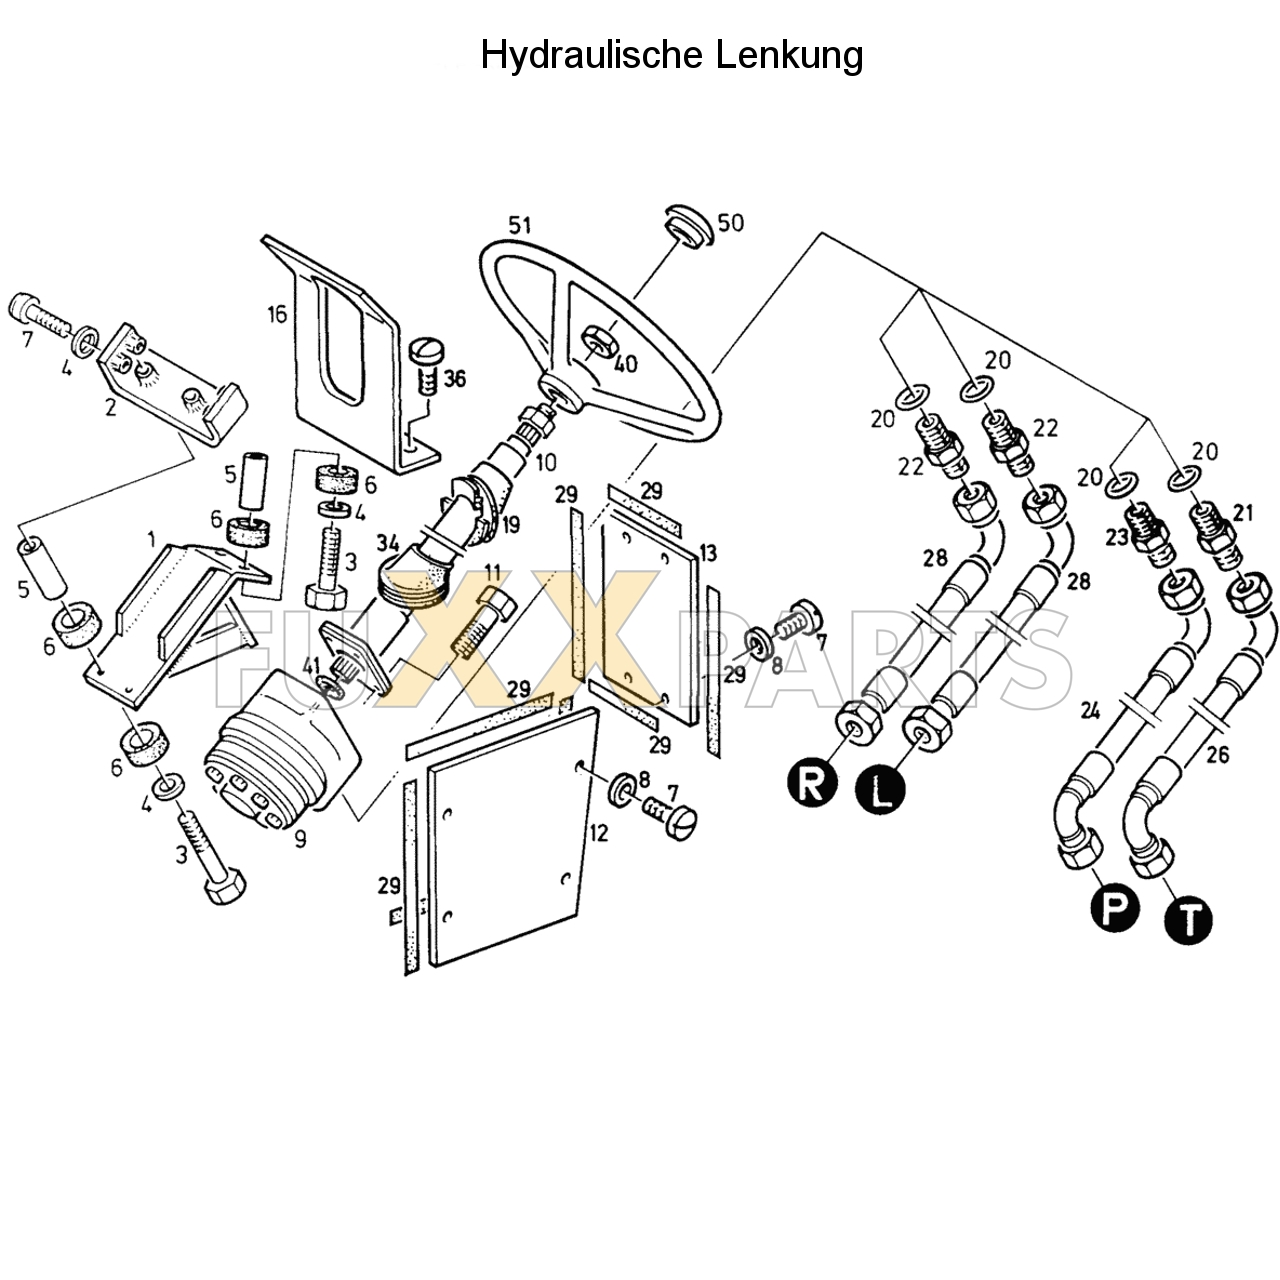 D 5207 C Hydraulische Lenkung 1